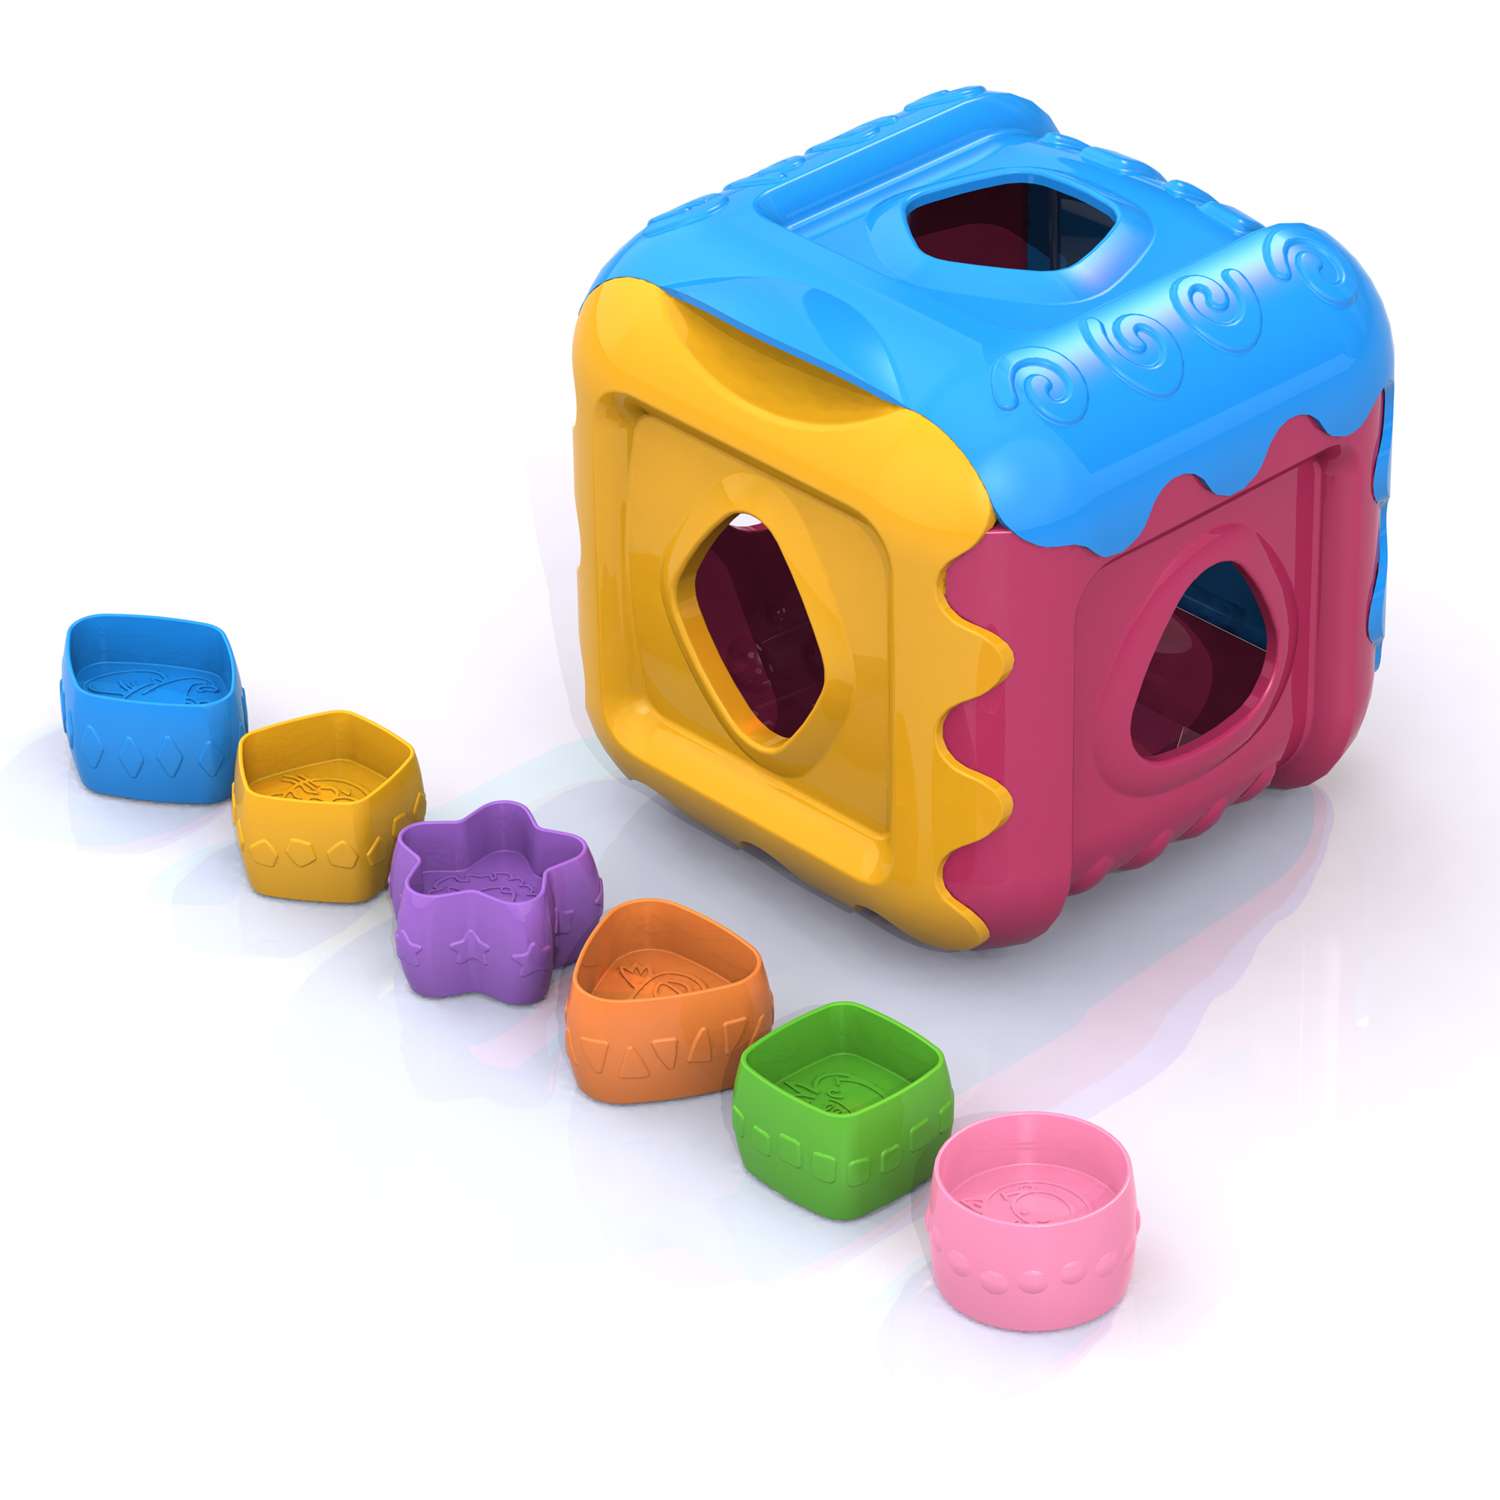 Дидактическая игрушка Нордпласт Кубик - фото 1